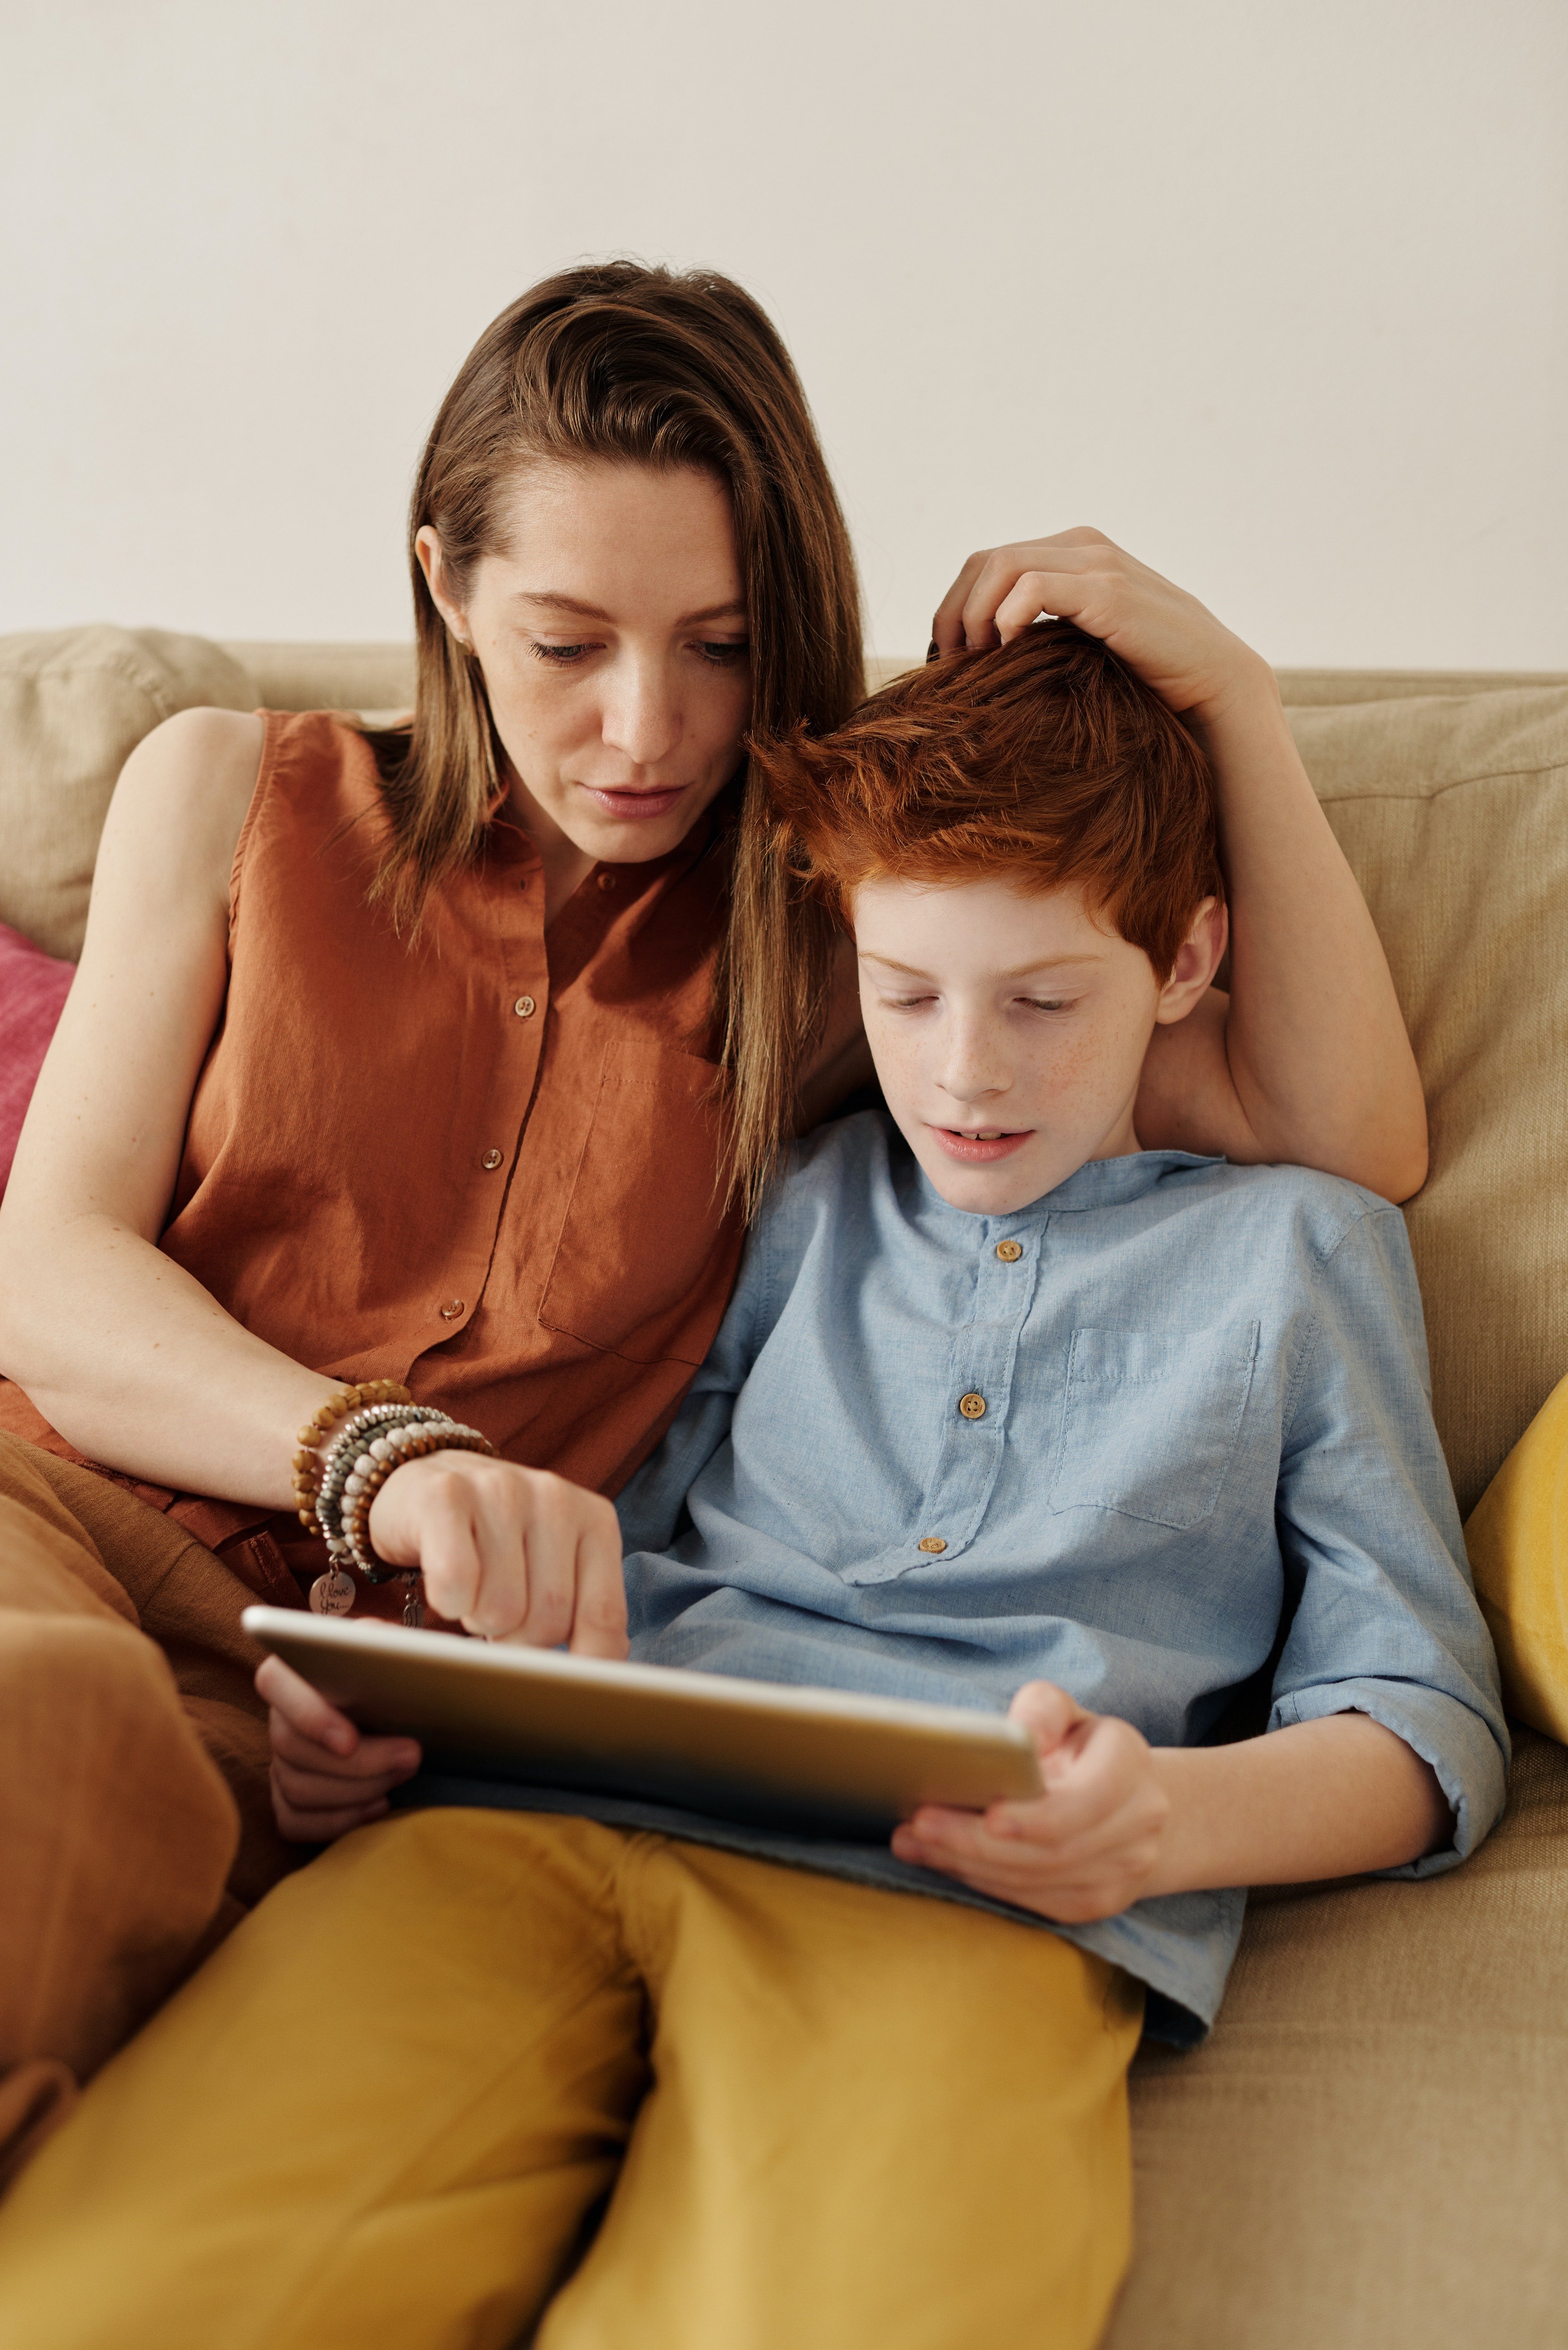 Une femme et un enfant assissent et entraine de regarder quelque chose sur une tablette. | Photo : Pexels